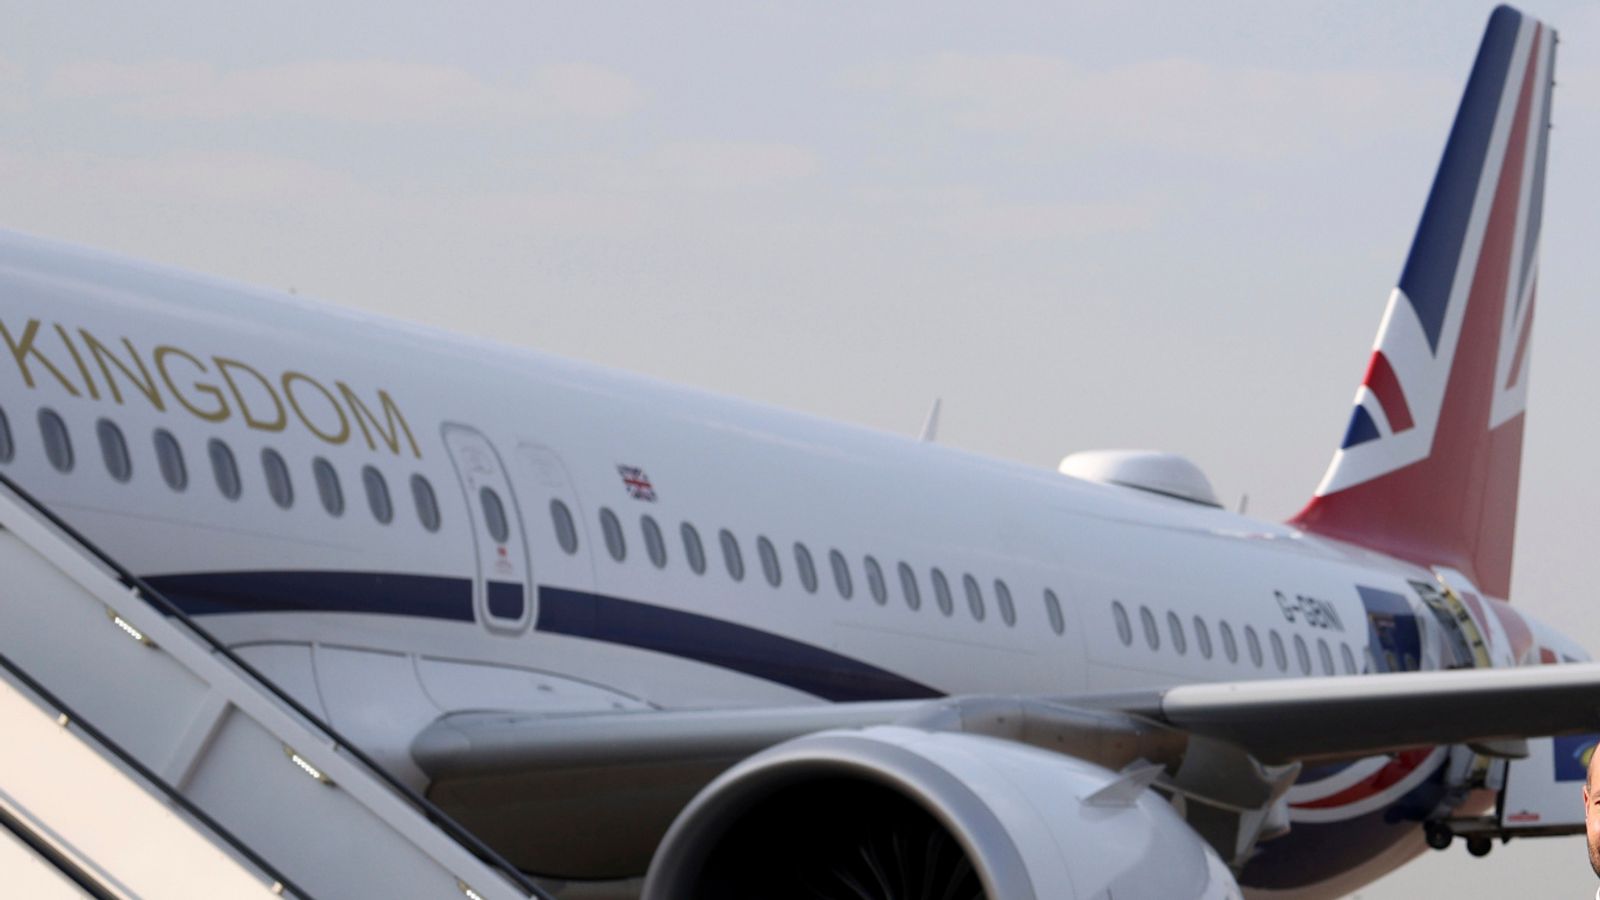 Министерството на вътрешните работи `наема хангар за самолети`, за да практикува принудително принуждаване на търсещи убежище на полети до Руанда